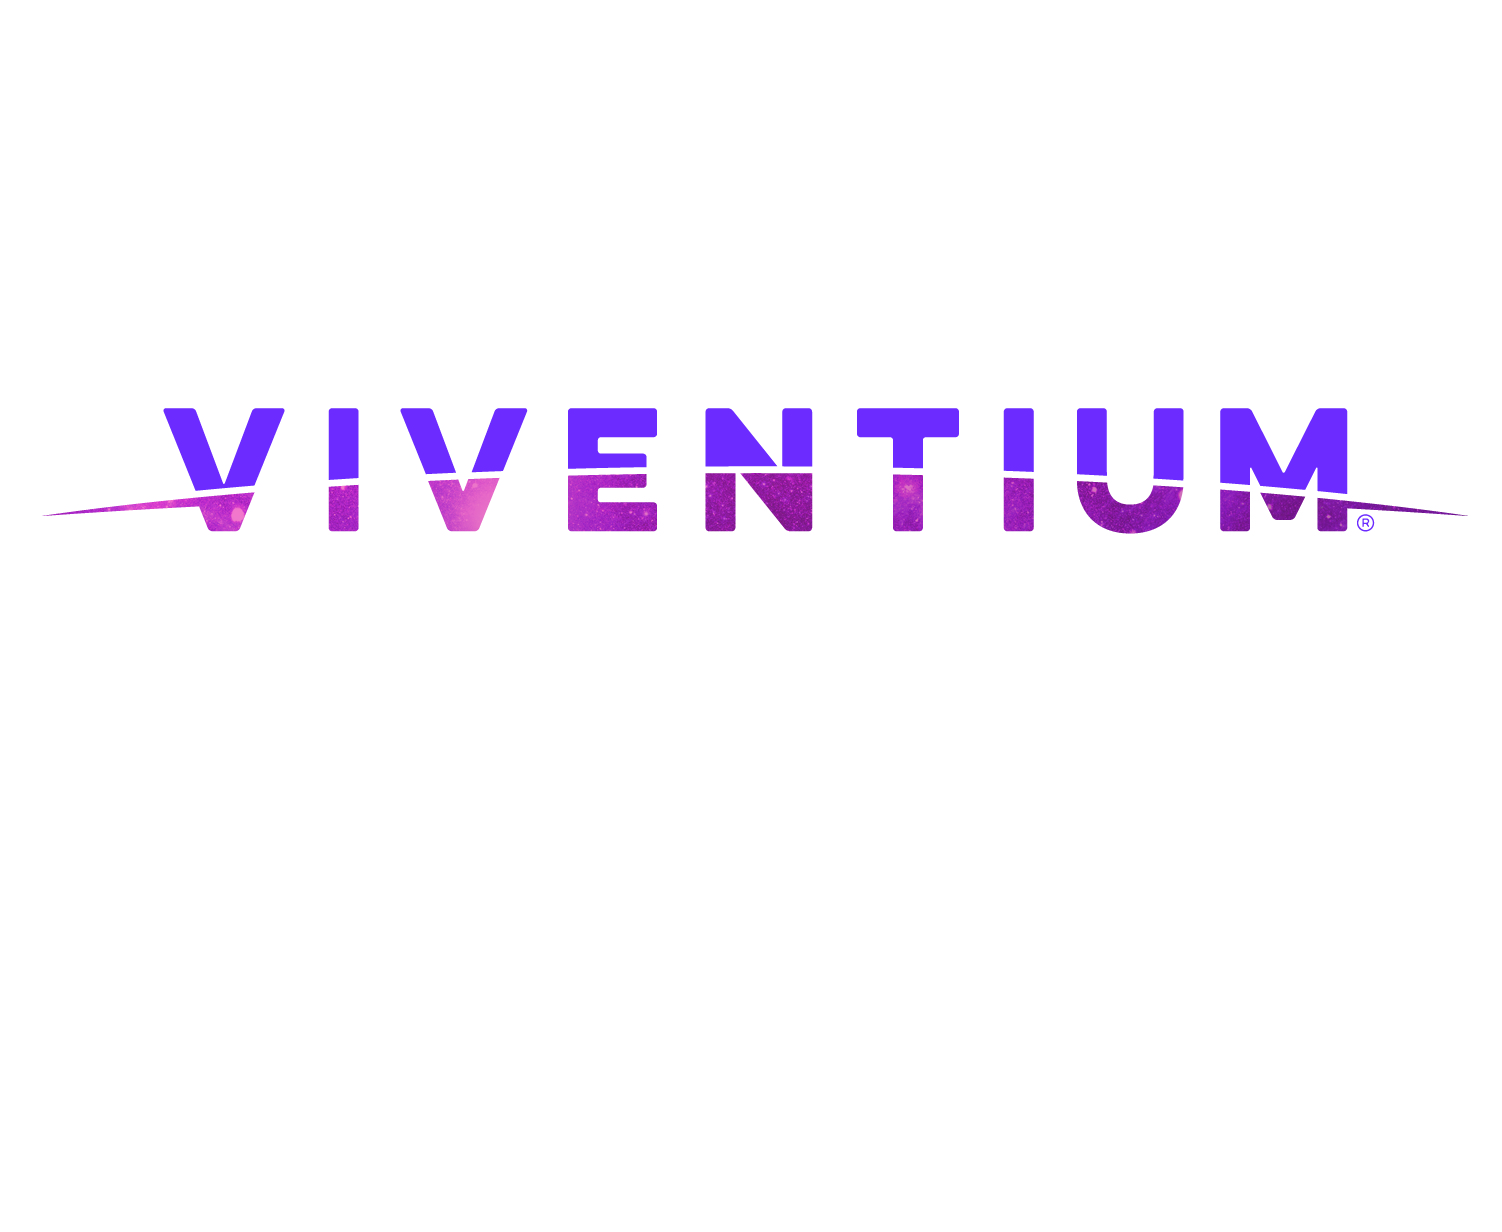 Viventium named Summ